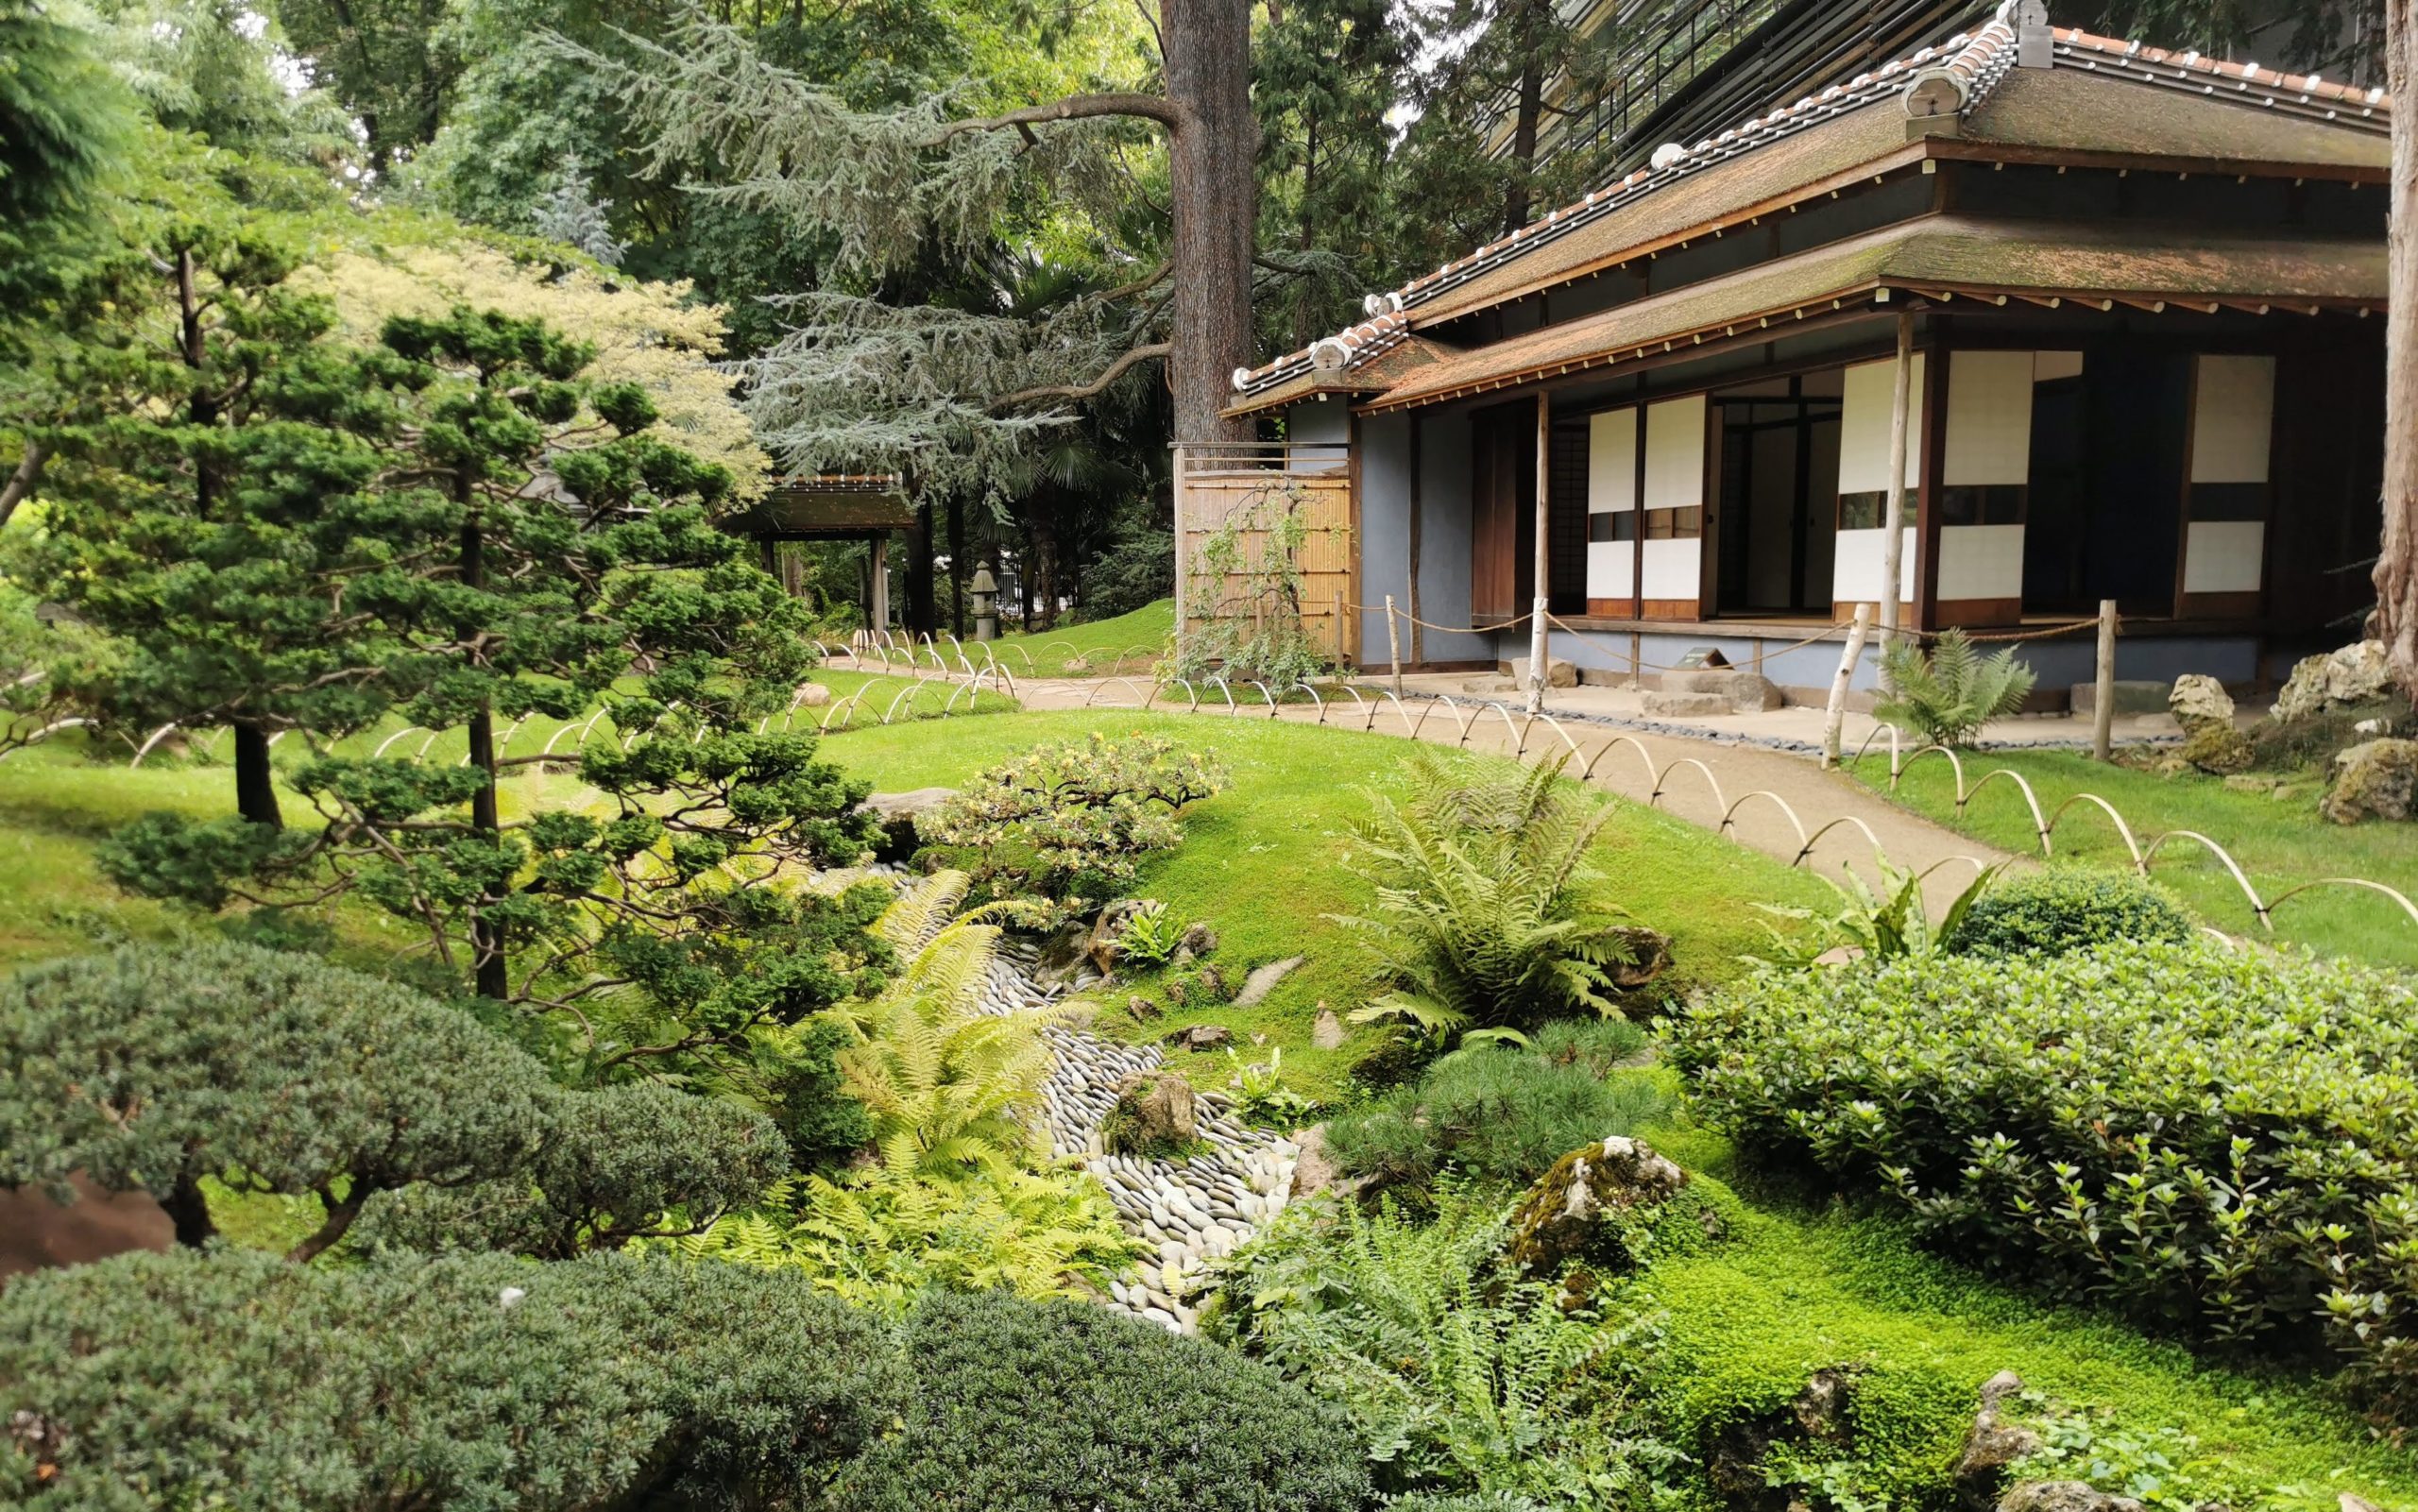 Maison traditionnelle japonaise Albert Kahn museum